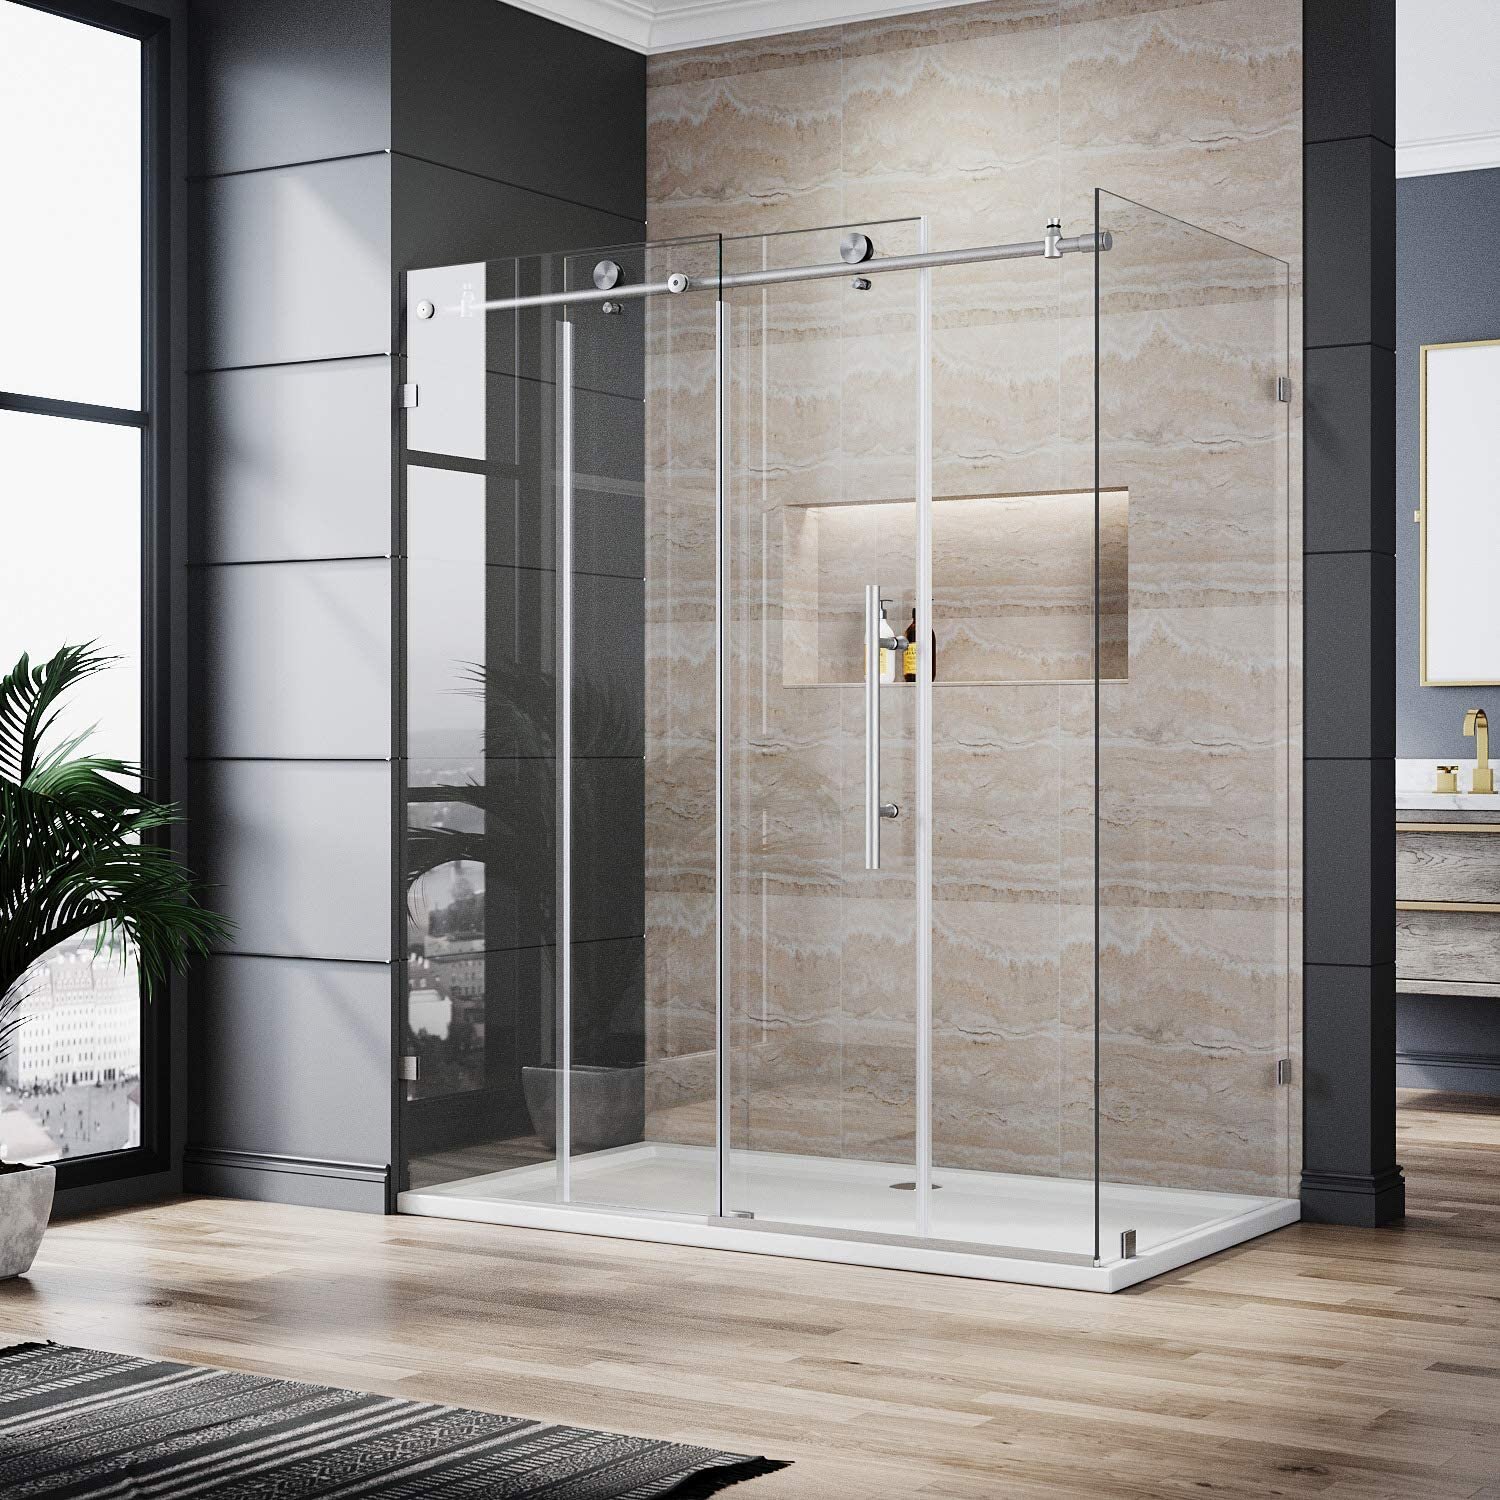 https://assets.wfcdn.com/im/14659855/compr-r85/1855/185587733/60-w-x-34-d-x-72-h-frameless-rectangle-shower-enclosure.jpg